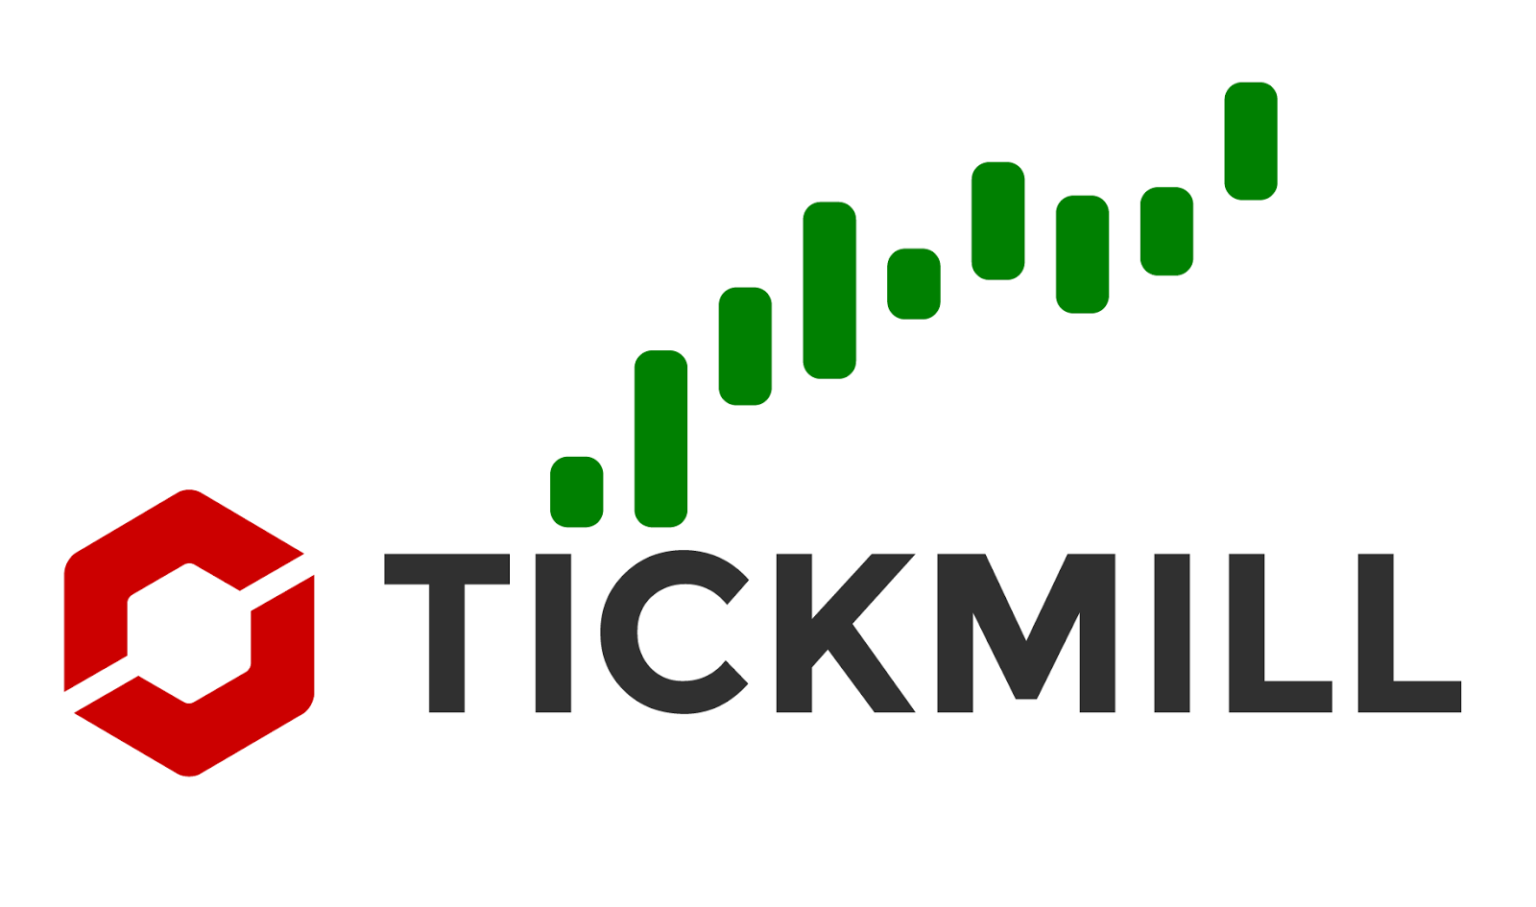 Tickmill تيك ميل شركة فوركس موثوقة من منظمات أوروبية ولها ظروف تداول واضحة ومحترمة